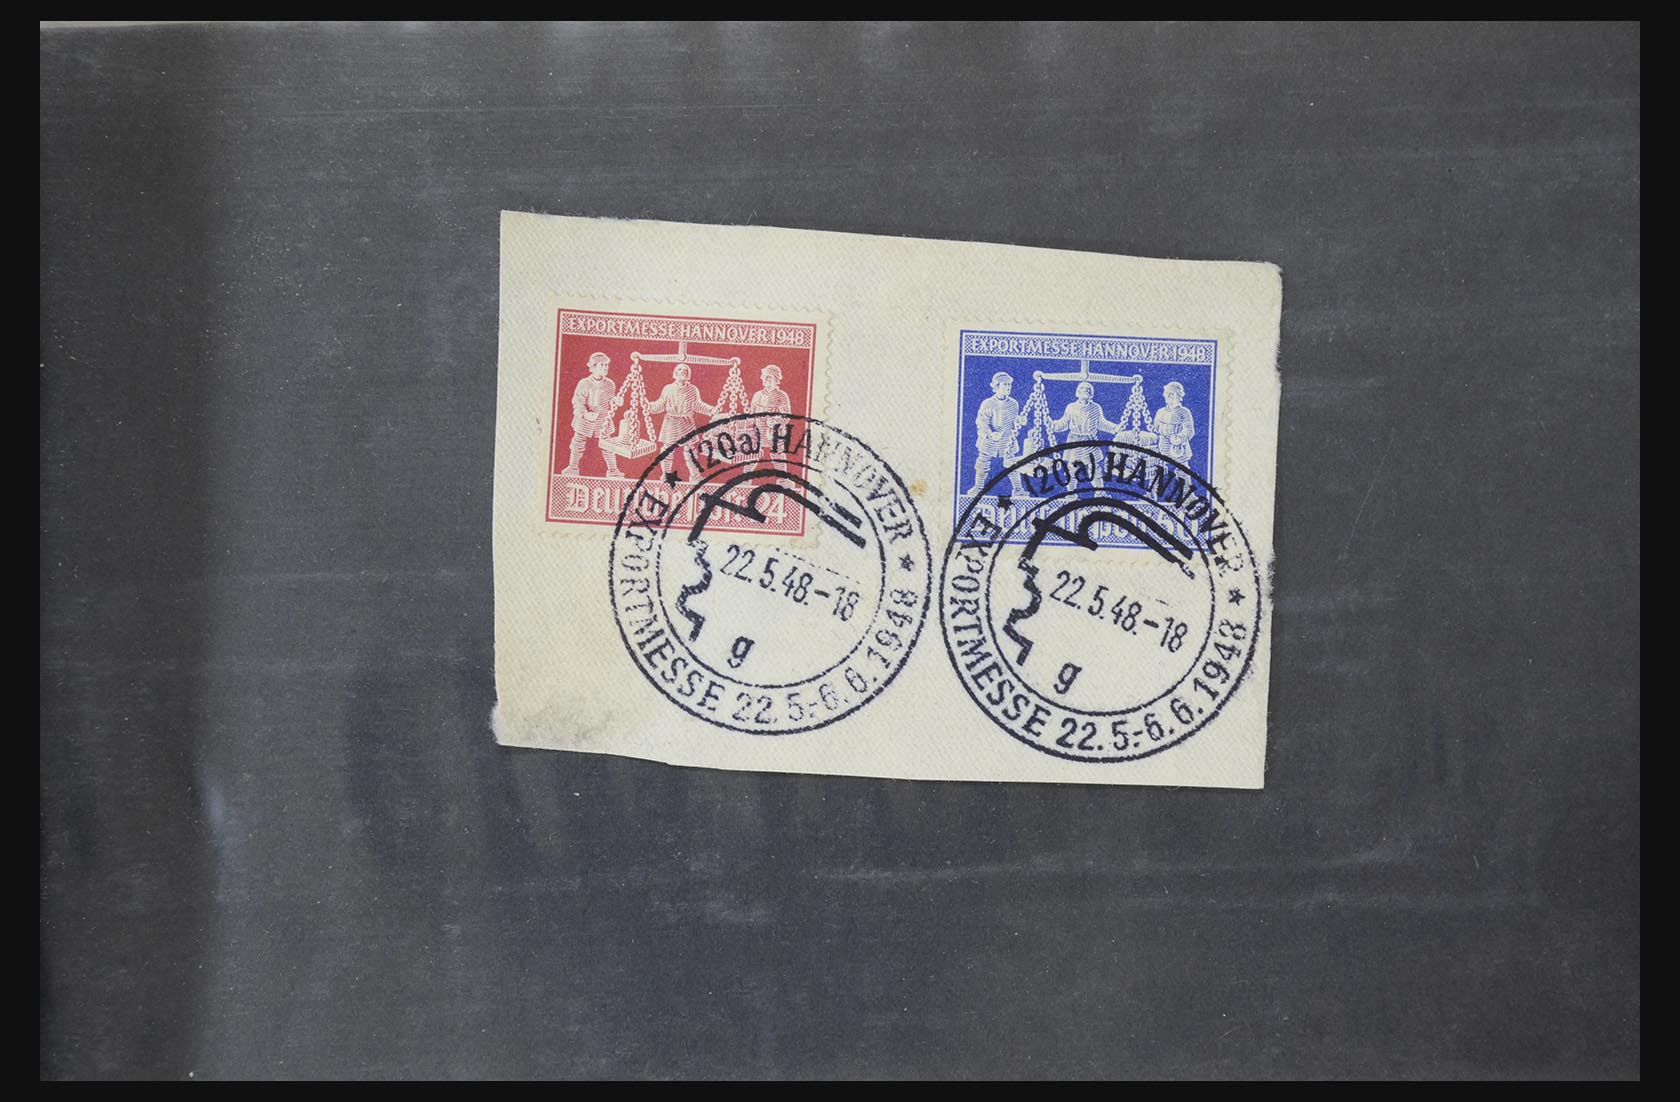 31581 005 - 31581 Duitsland brieven en FDC's 1945-1981.